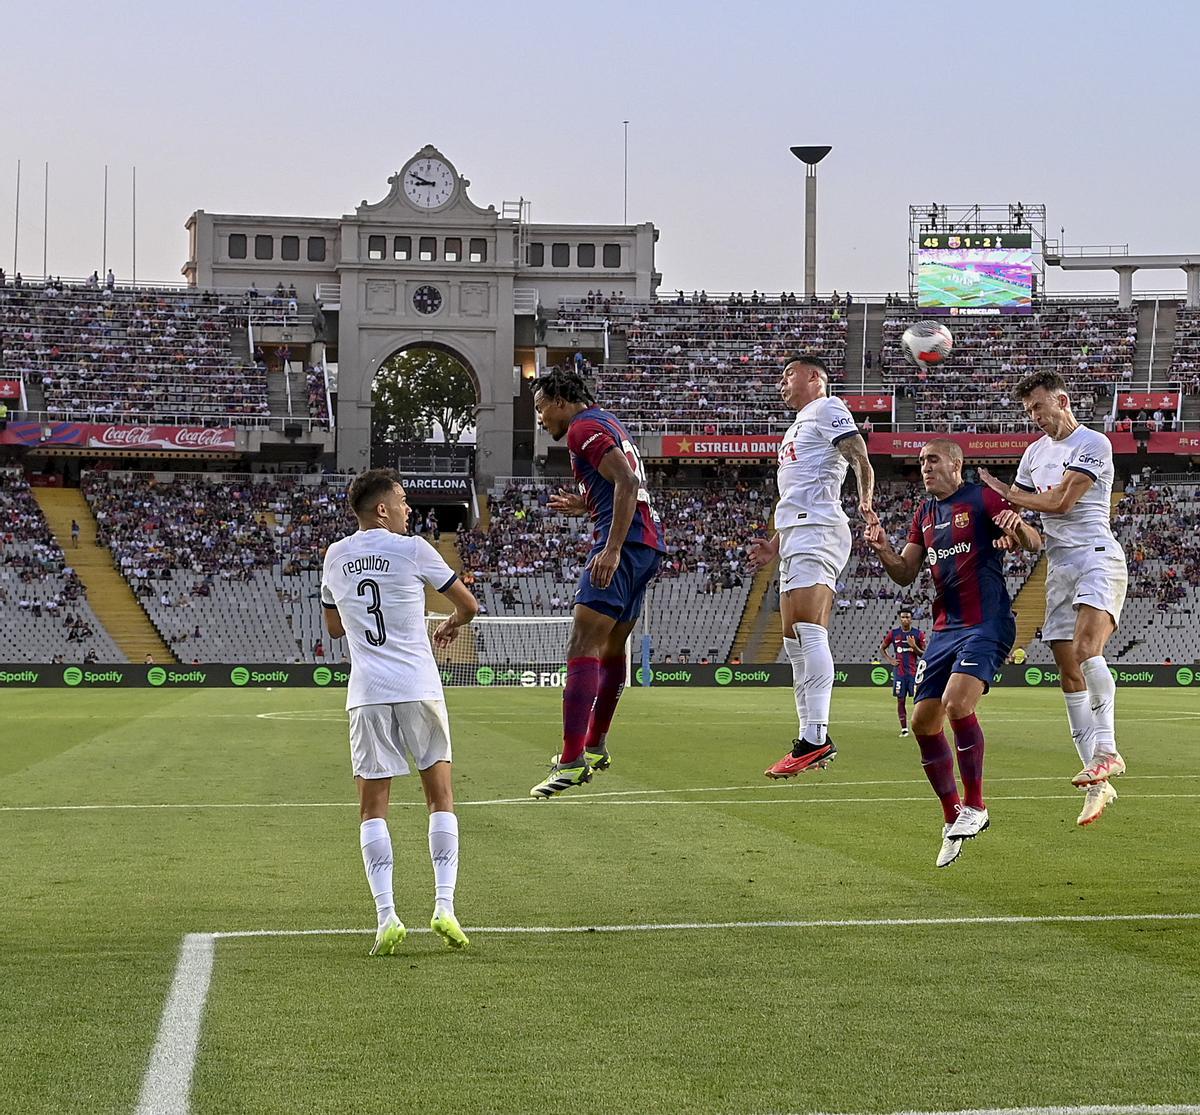 Estreno feliz en Montjuïc. Kounde y Oriol Romeu tratan de cabecear un centro durante el trofeo Joan Gamper que les enfrenta al Tottenham Hotspur en el estadi Olimpic Lluis Companys en Montjuïc.